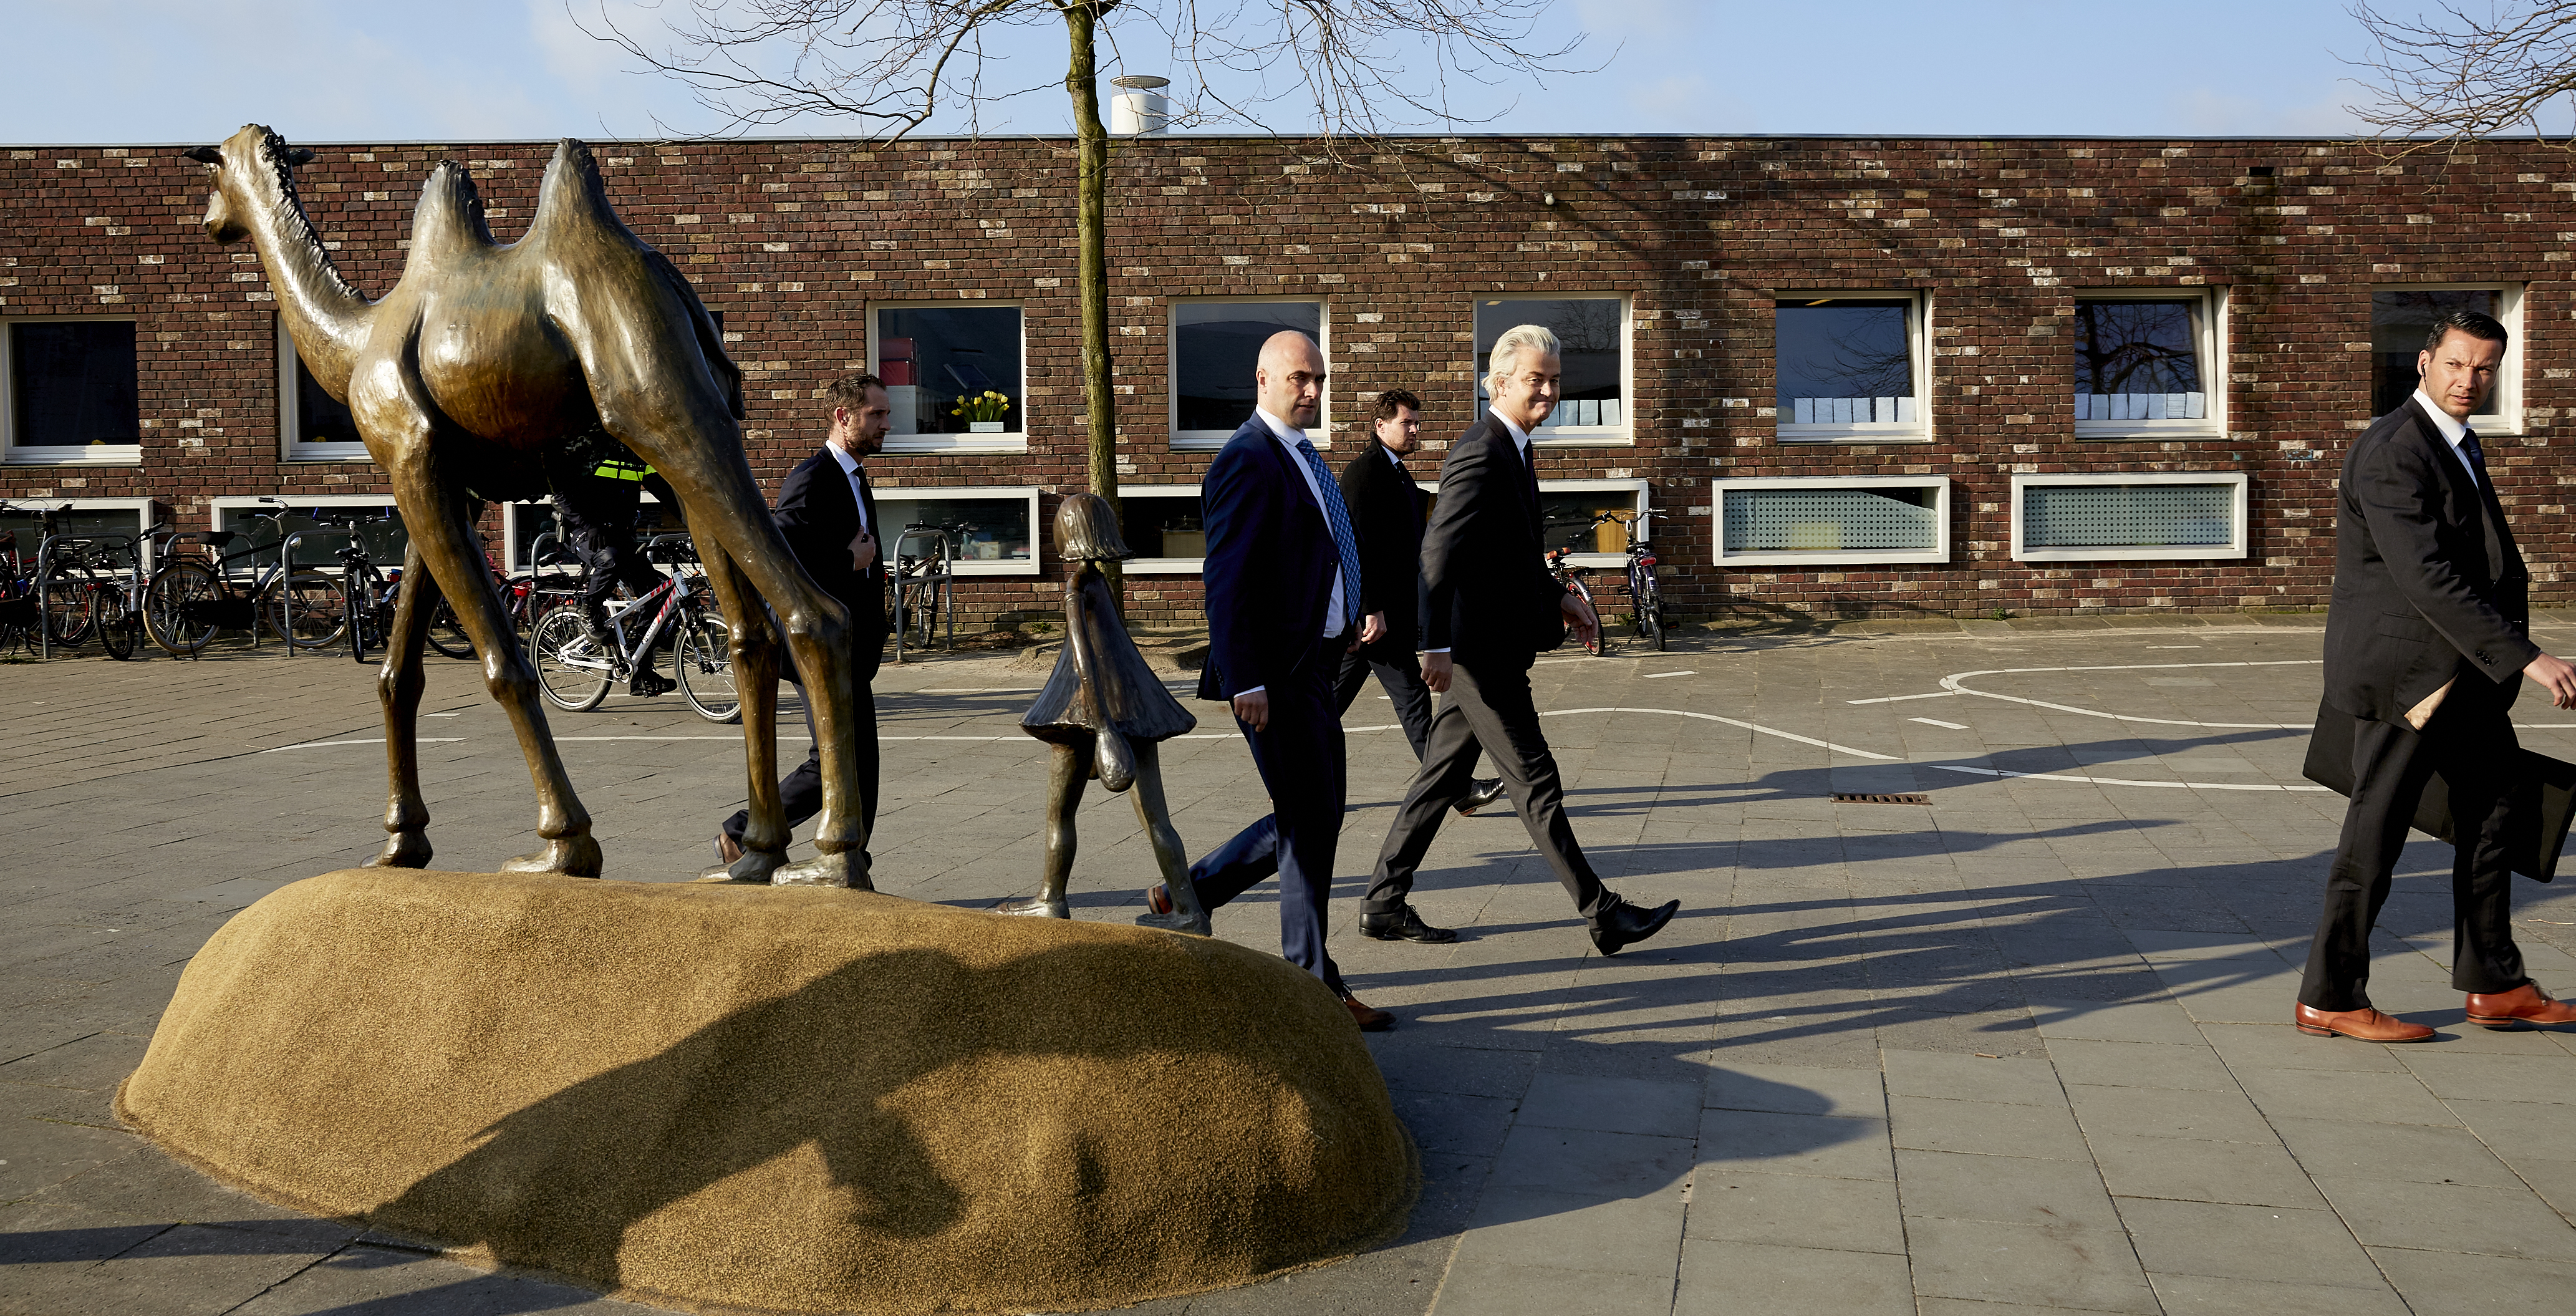 2016-04-06 09:10:37 DEN HAAG - PVV-leider Geert Wilders brengt bij basisschool De Walvis een stem uit tijdens het referendum over het associatieverdrag van de EU met Oekraine. Na afloop loopt Wilders met beveiligers naar zijn auto. ANP MARTIJN BEEKMAN